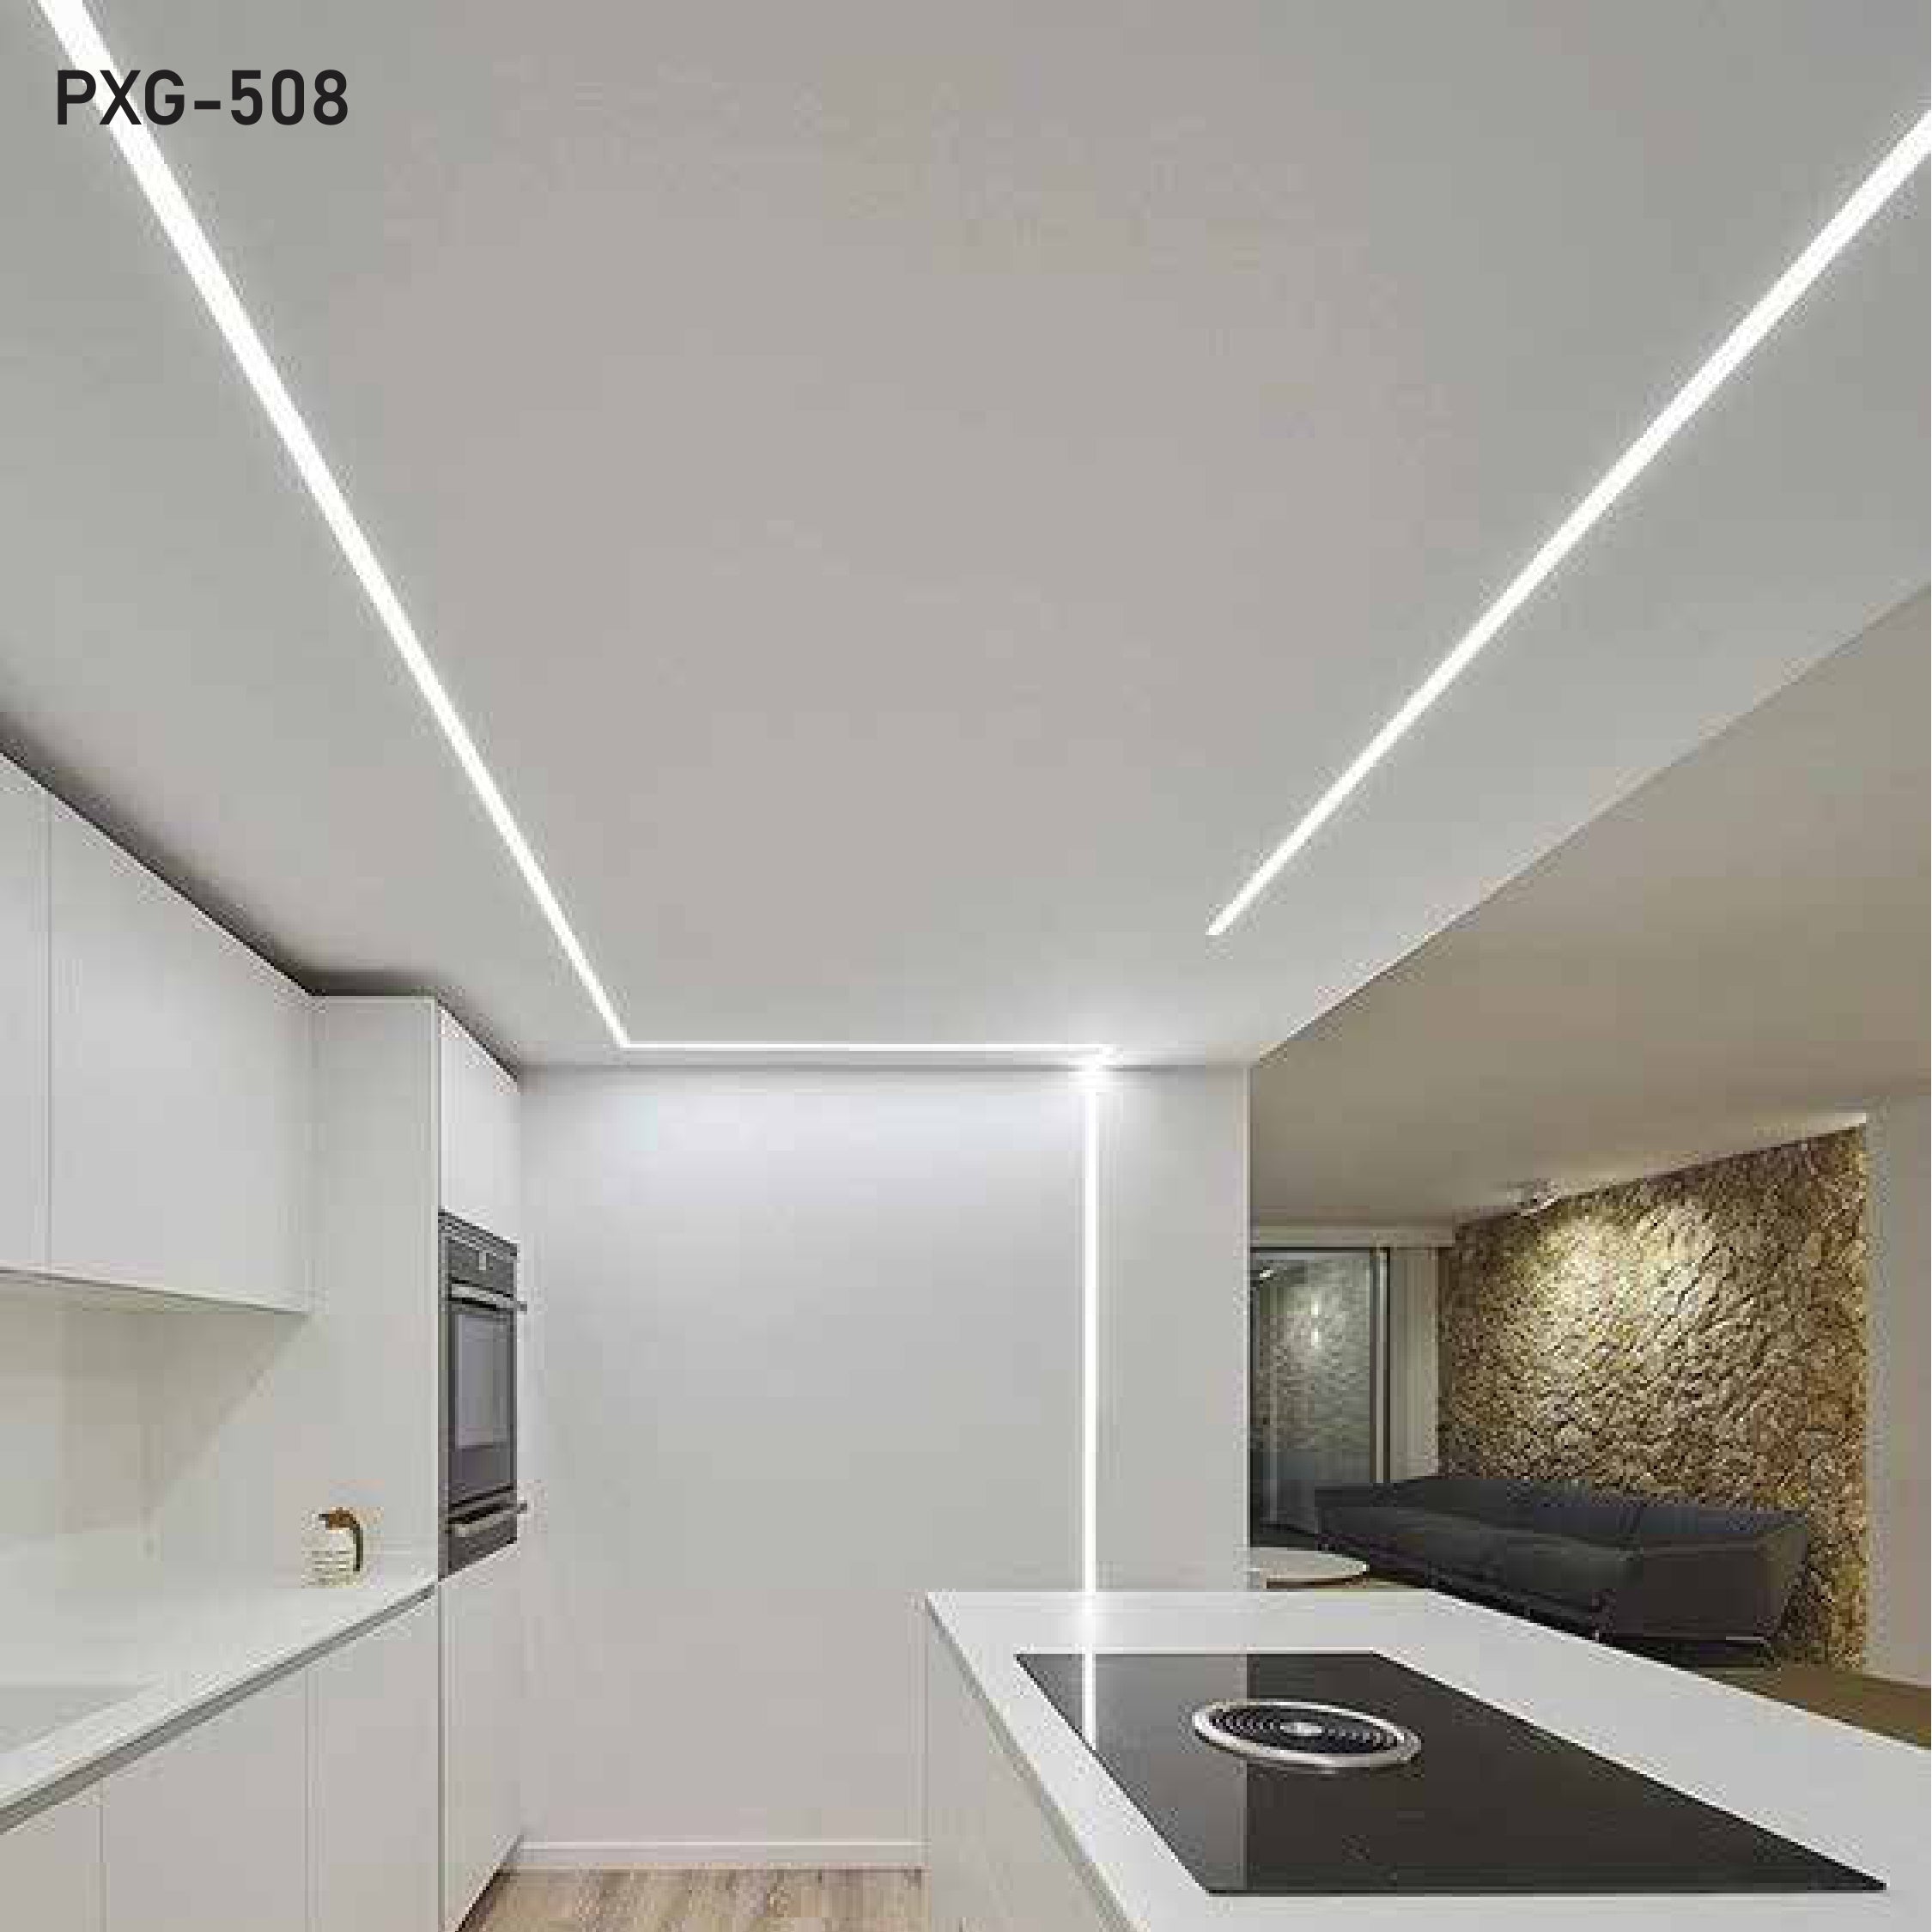 Aluminium Profile Light | PXG-508